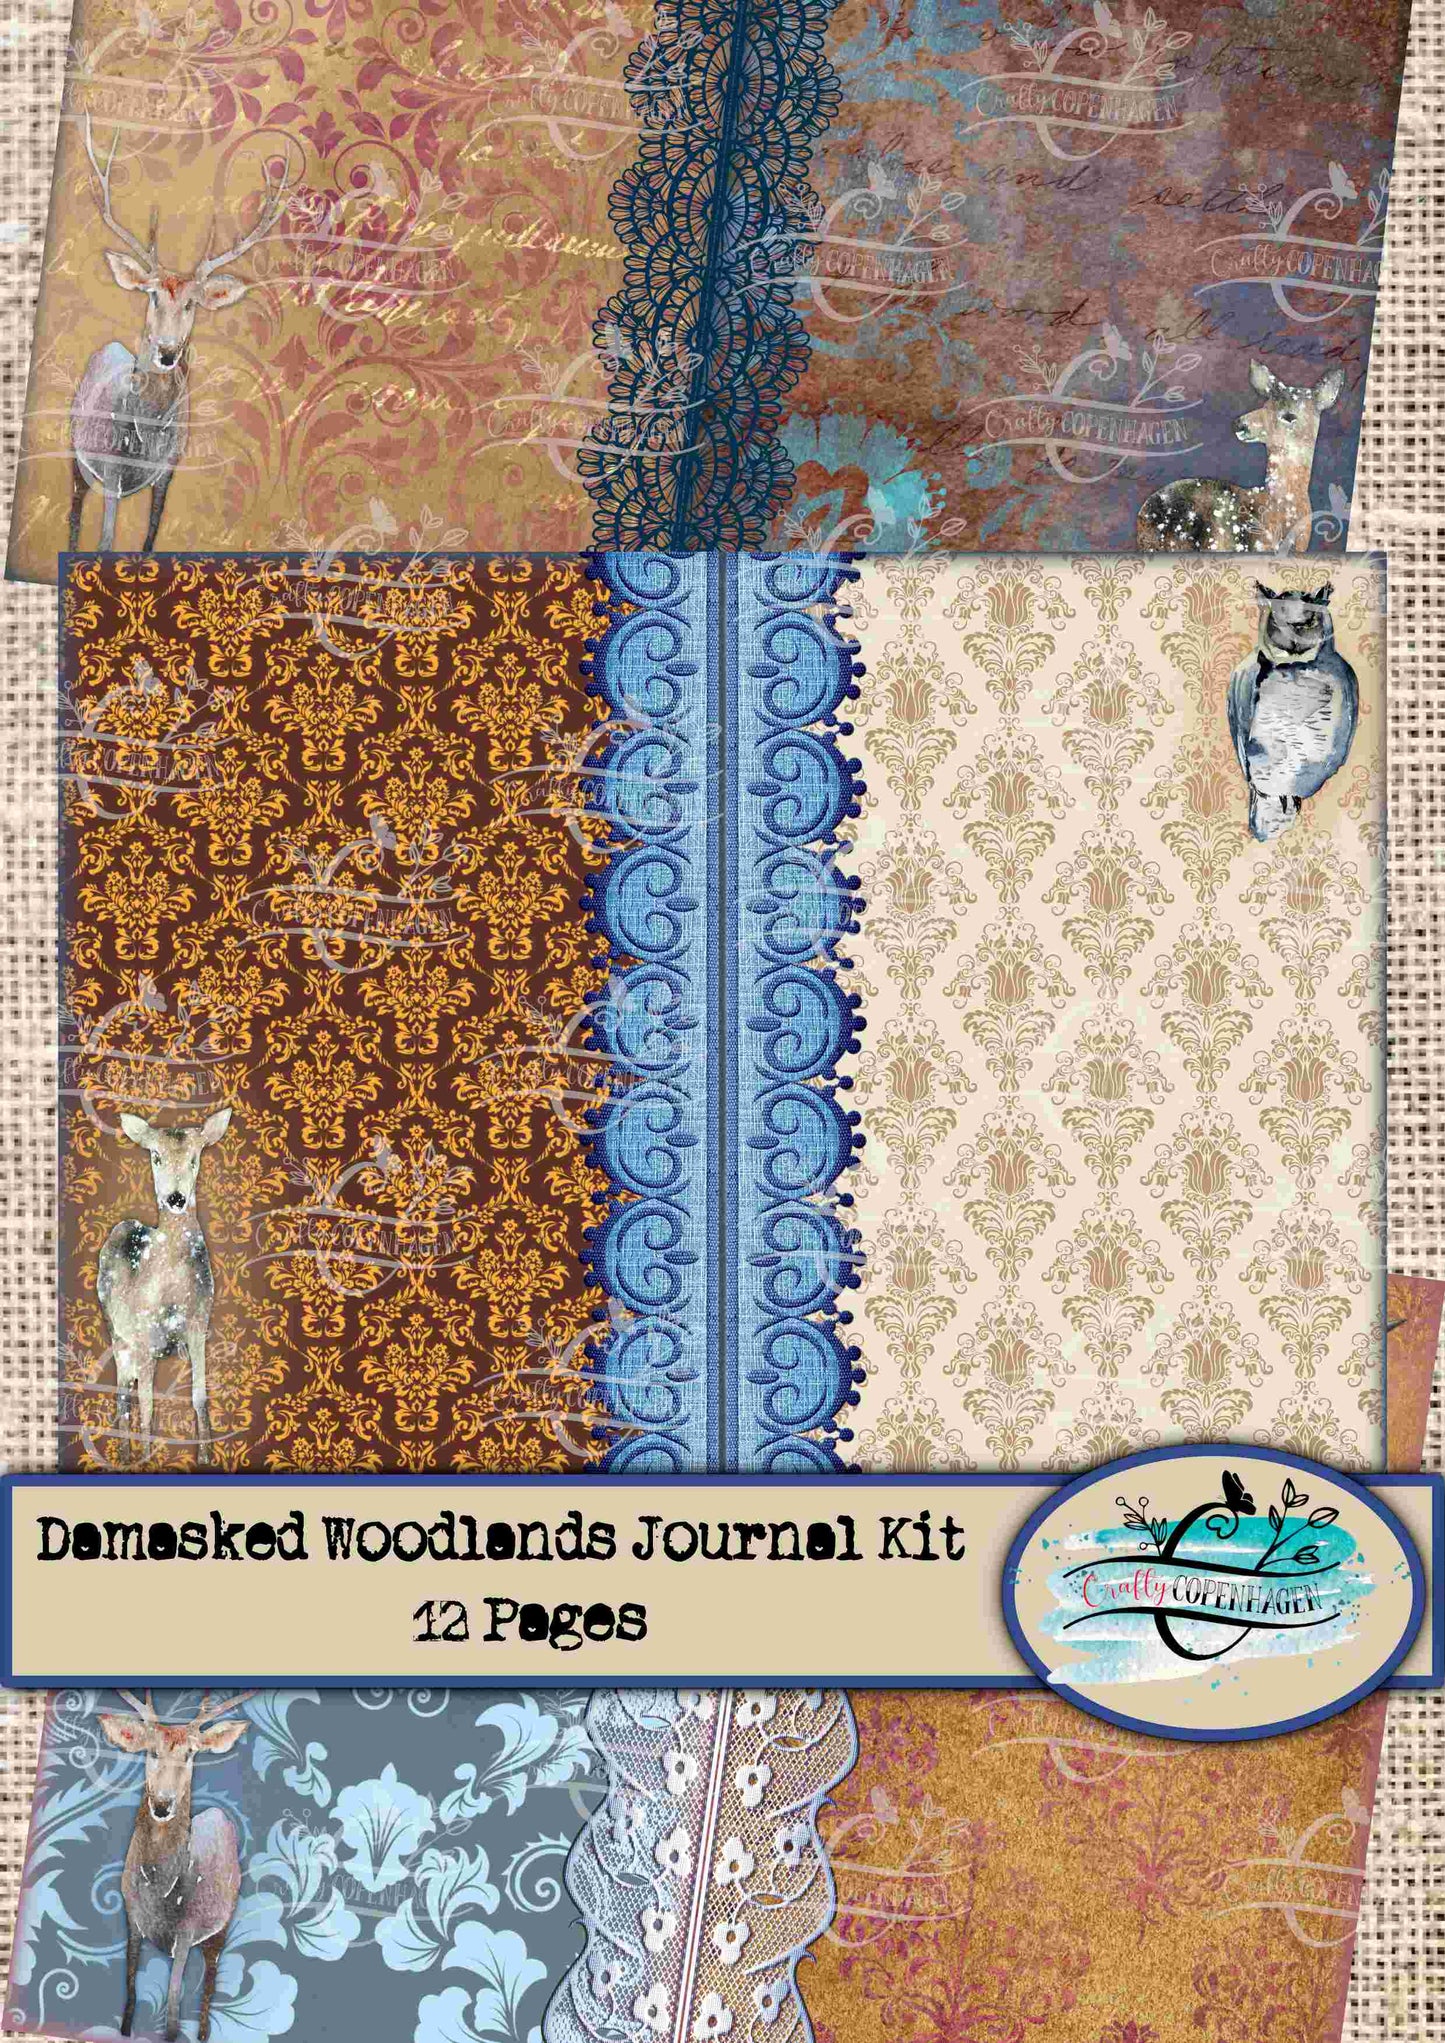 Damasked Woodlands Digital Junk Journal Kit - 12 Pages Instant Download & Print Digital Scrapbooking Paper, Cardmaking, Collage Paper